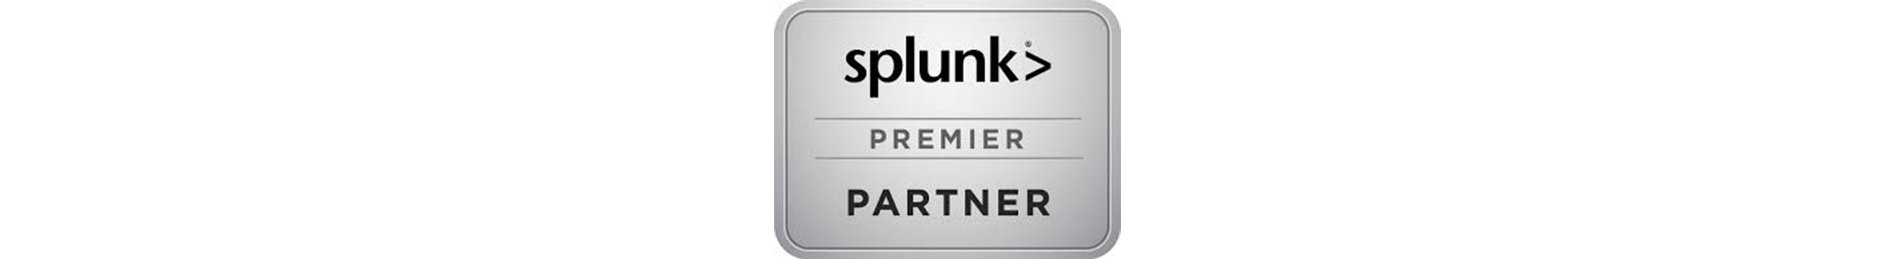 Splunk Scripted Input. Или как использовать скрипты для получения данных о работе систем и анализировать их в Splunk - 8